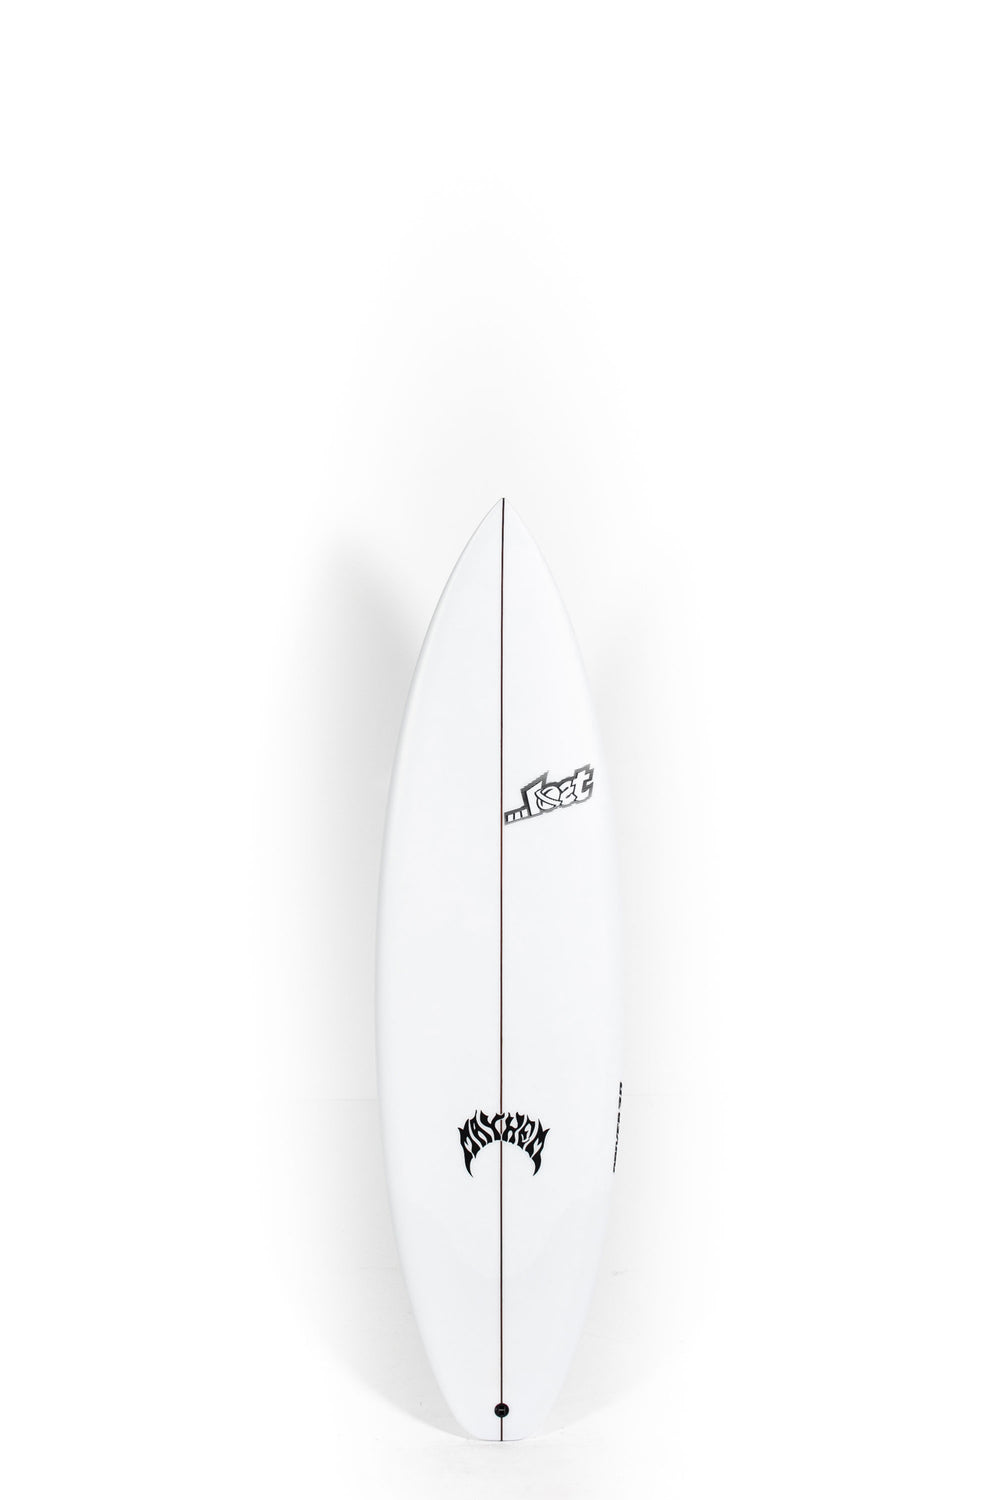 Lost Surfboards - DRIVER 3.0 by Matt Biolos - 5'9